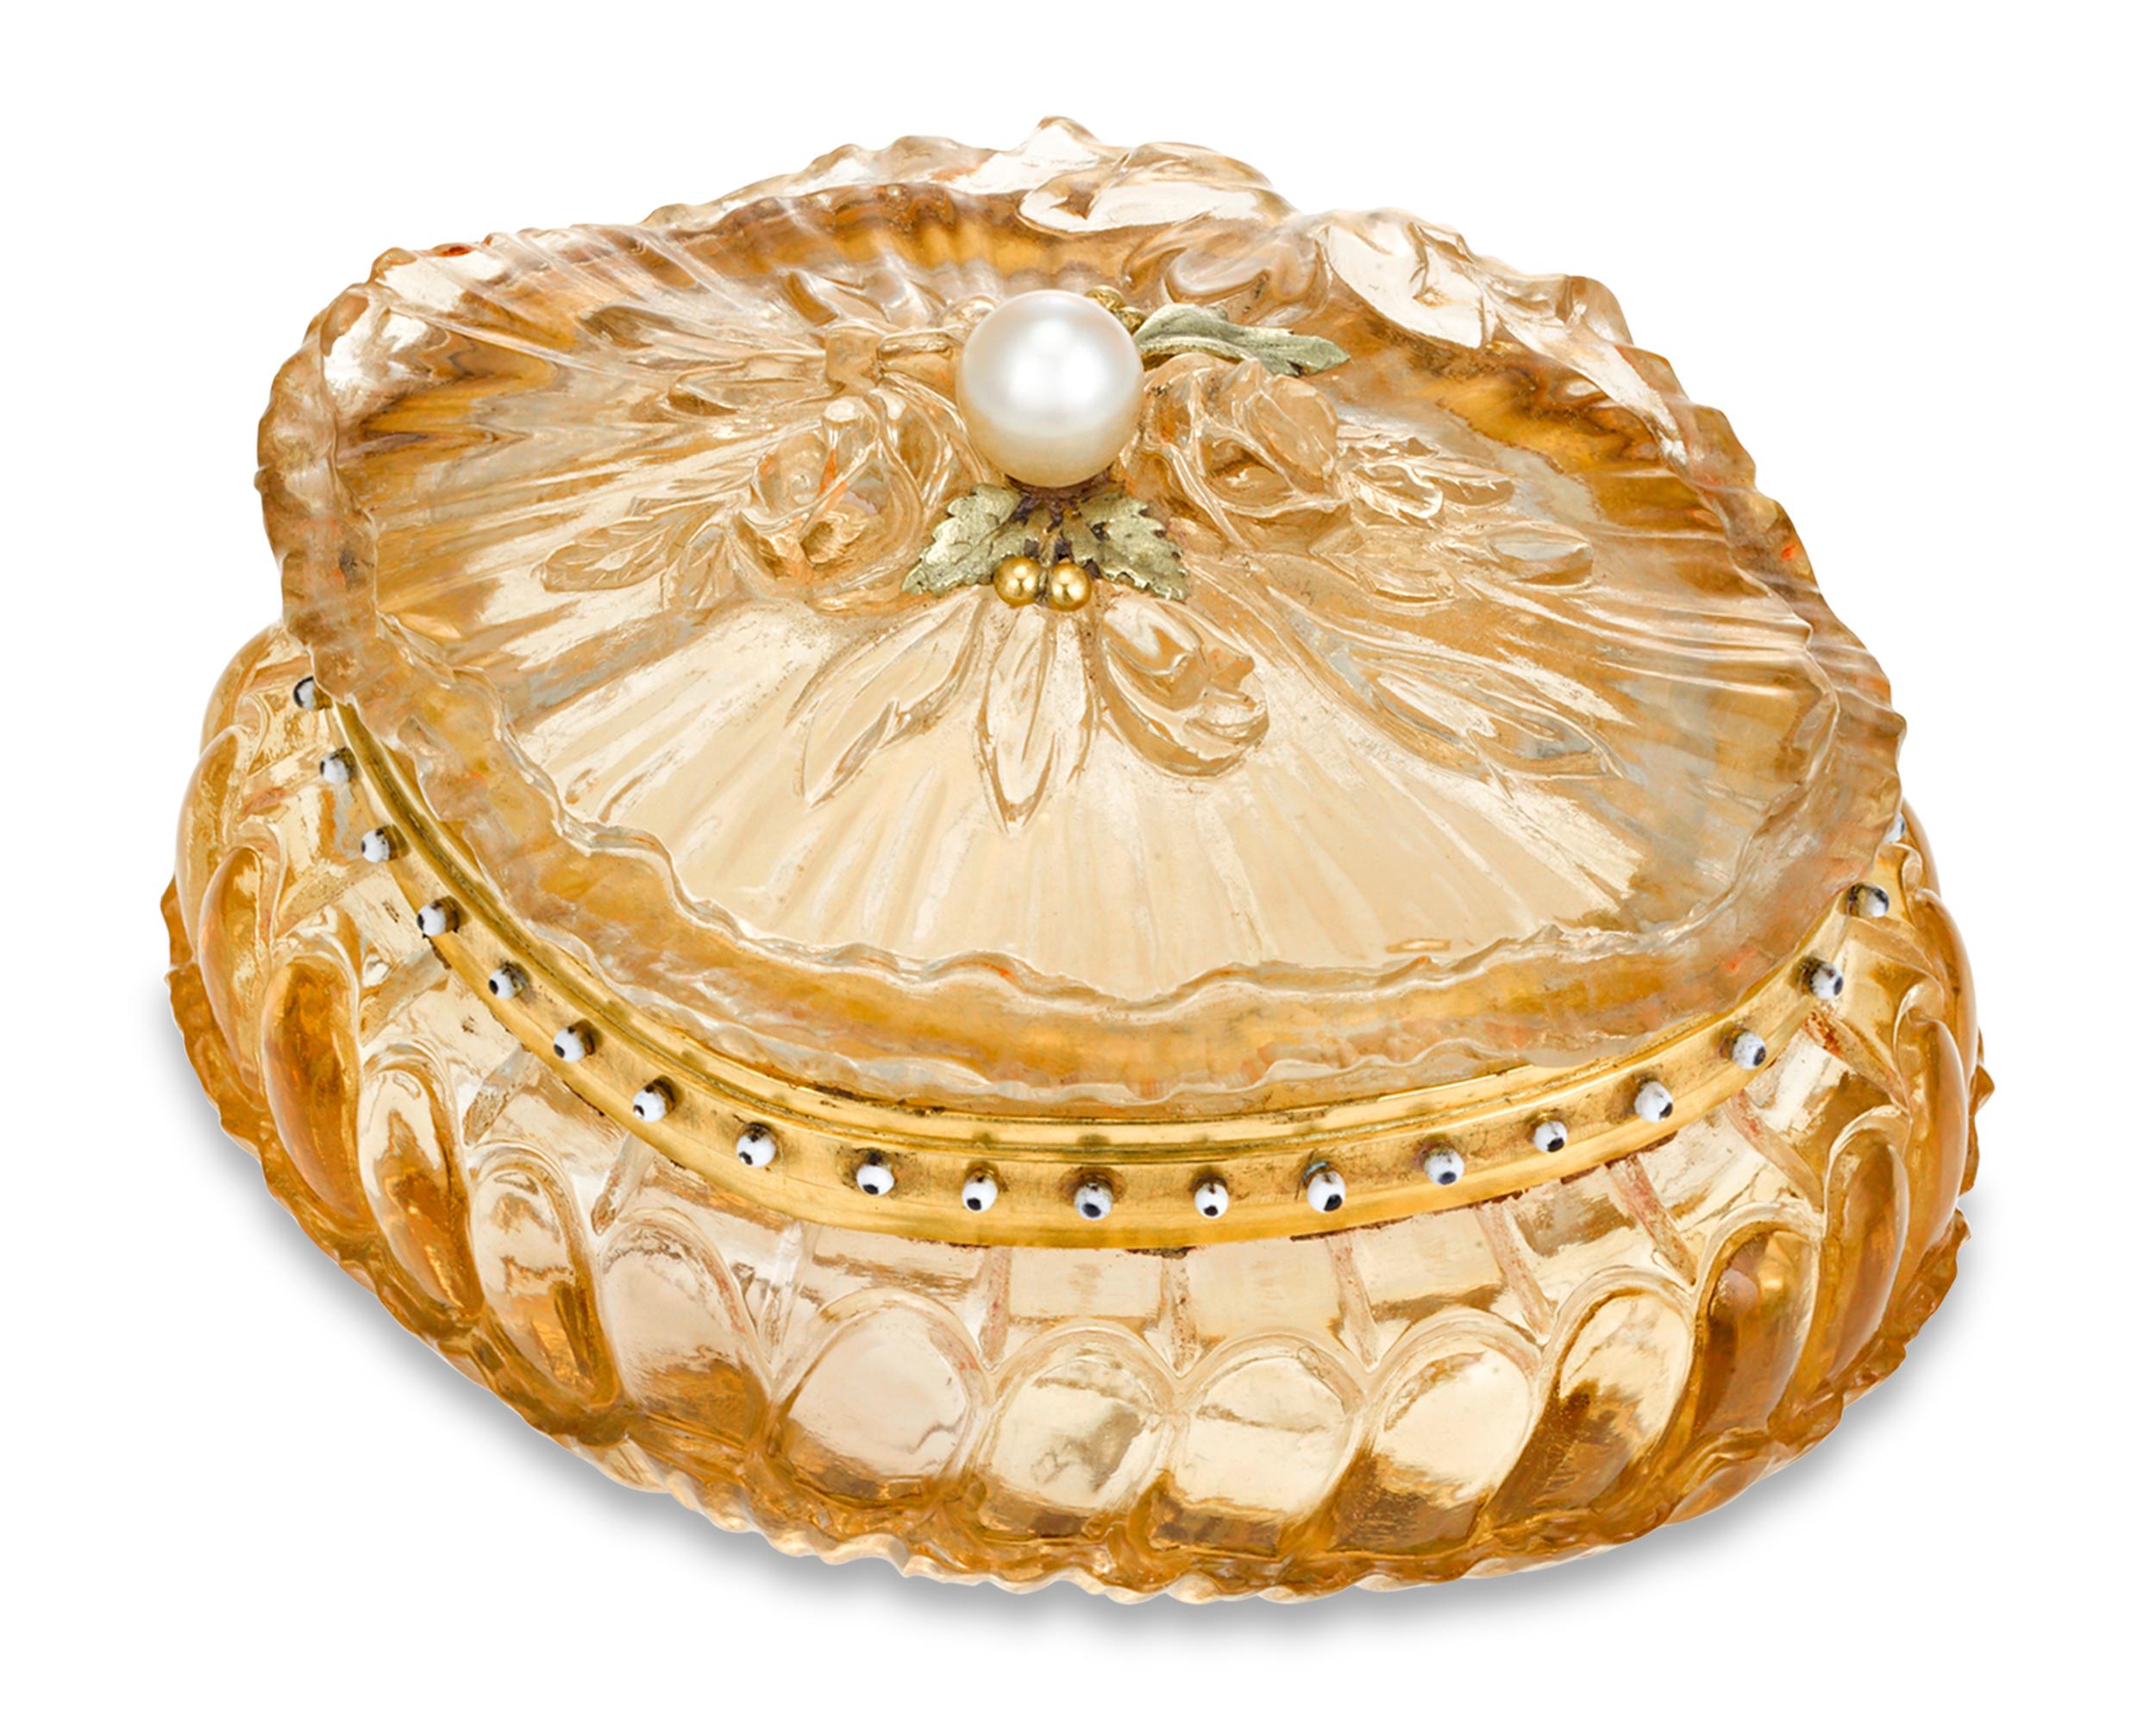 Diese exquisite französische Pillendose verbindet die meisterhafte französische Goldschmiedetradition mit dem Glanz des Zitrins. Das Kästchen wurde von dem berühmten französischen Juwelier Gustave-Roger Sandoz angefertigt, der für seine